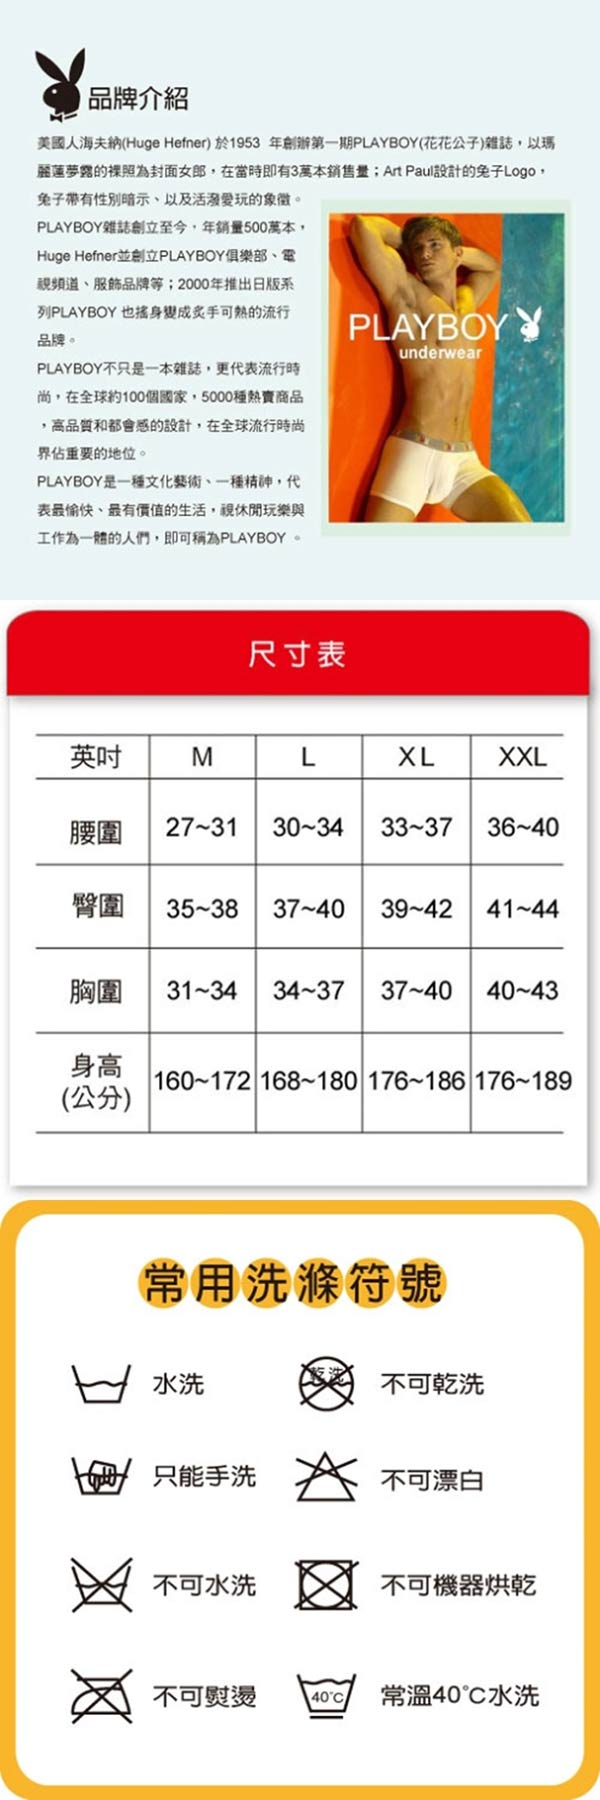 PLAYBOY 時尚53型動四角褲(超值3件組)